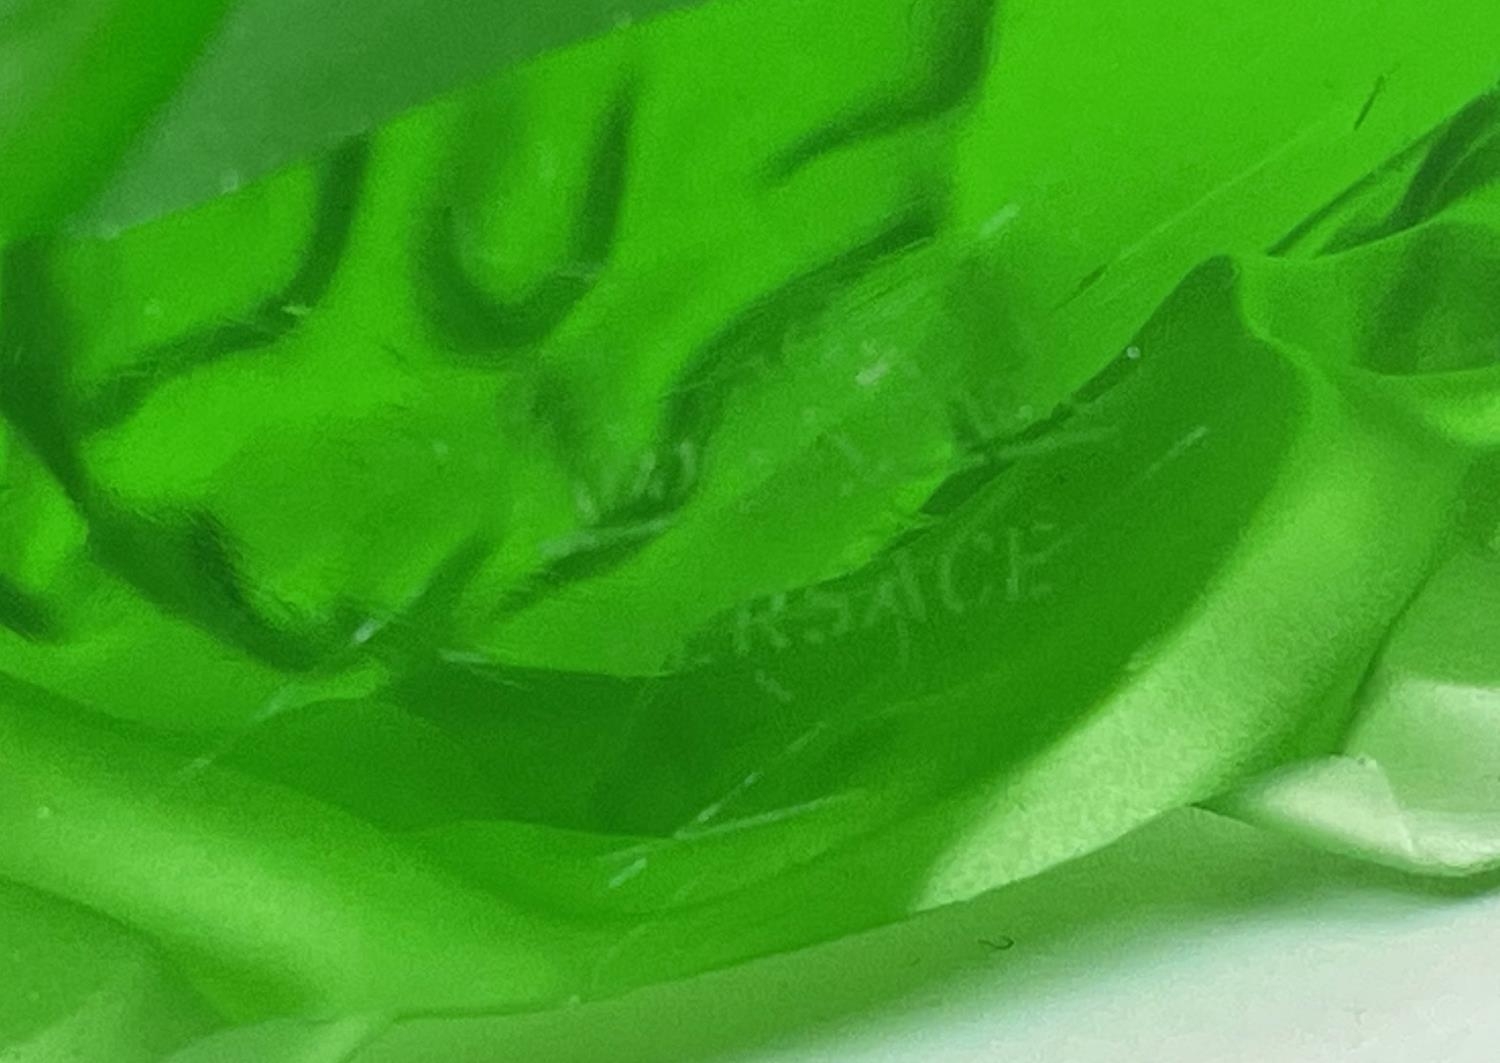 ROSENTHAL VERSACE MEDUSA PAPERWEIGHT, green crystal with a rosenthal clear crystal Versace medusa - Bild 3 aus 9